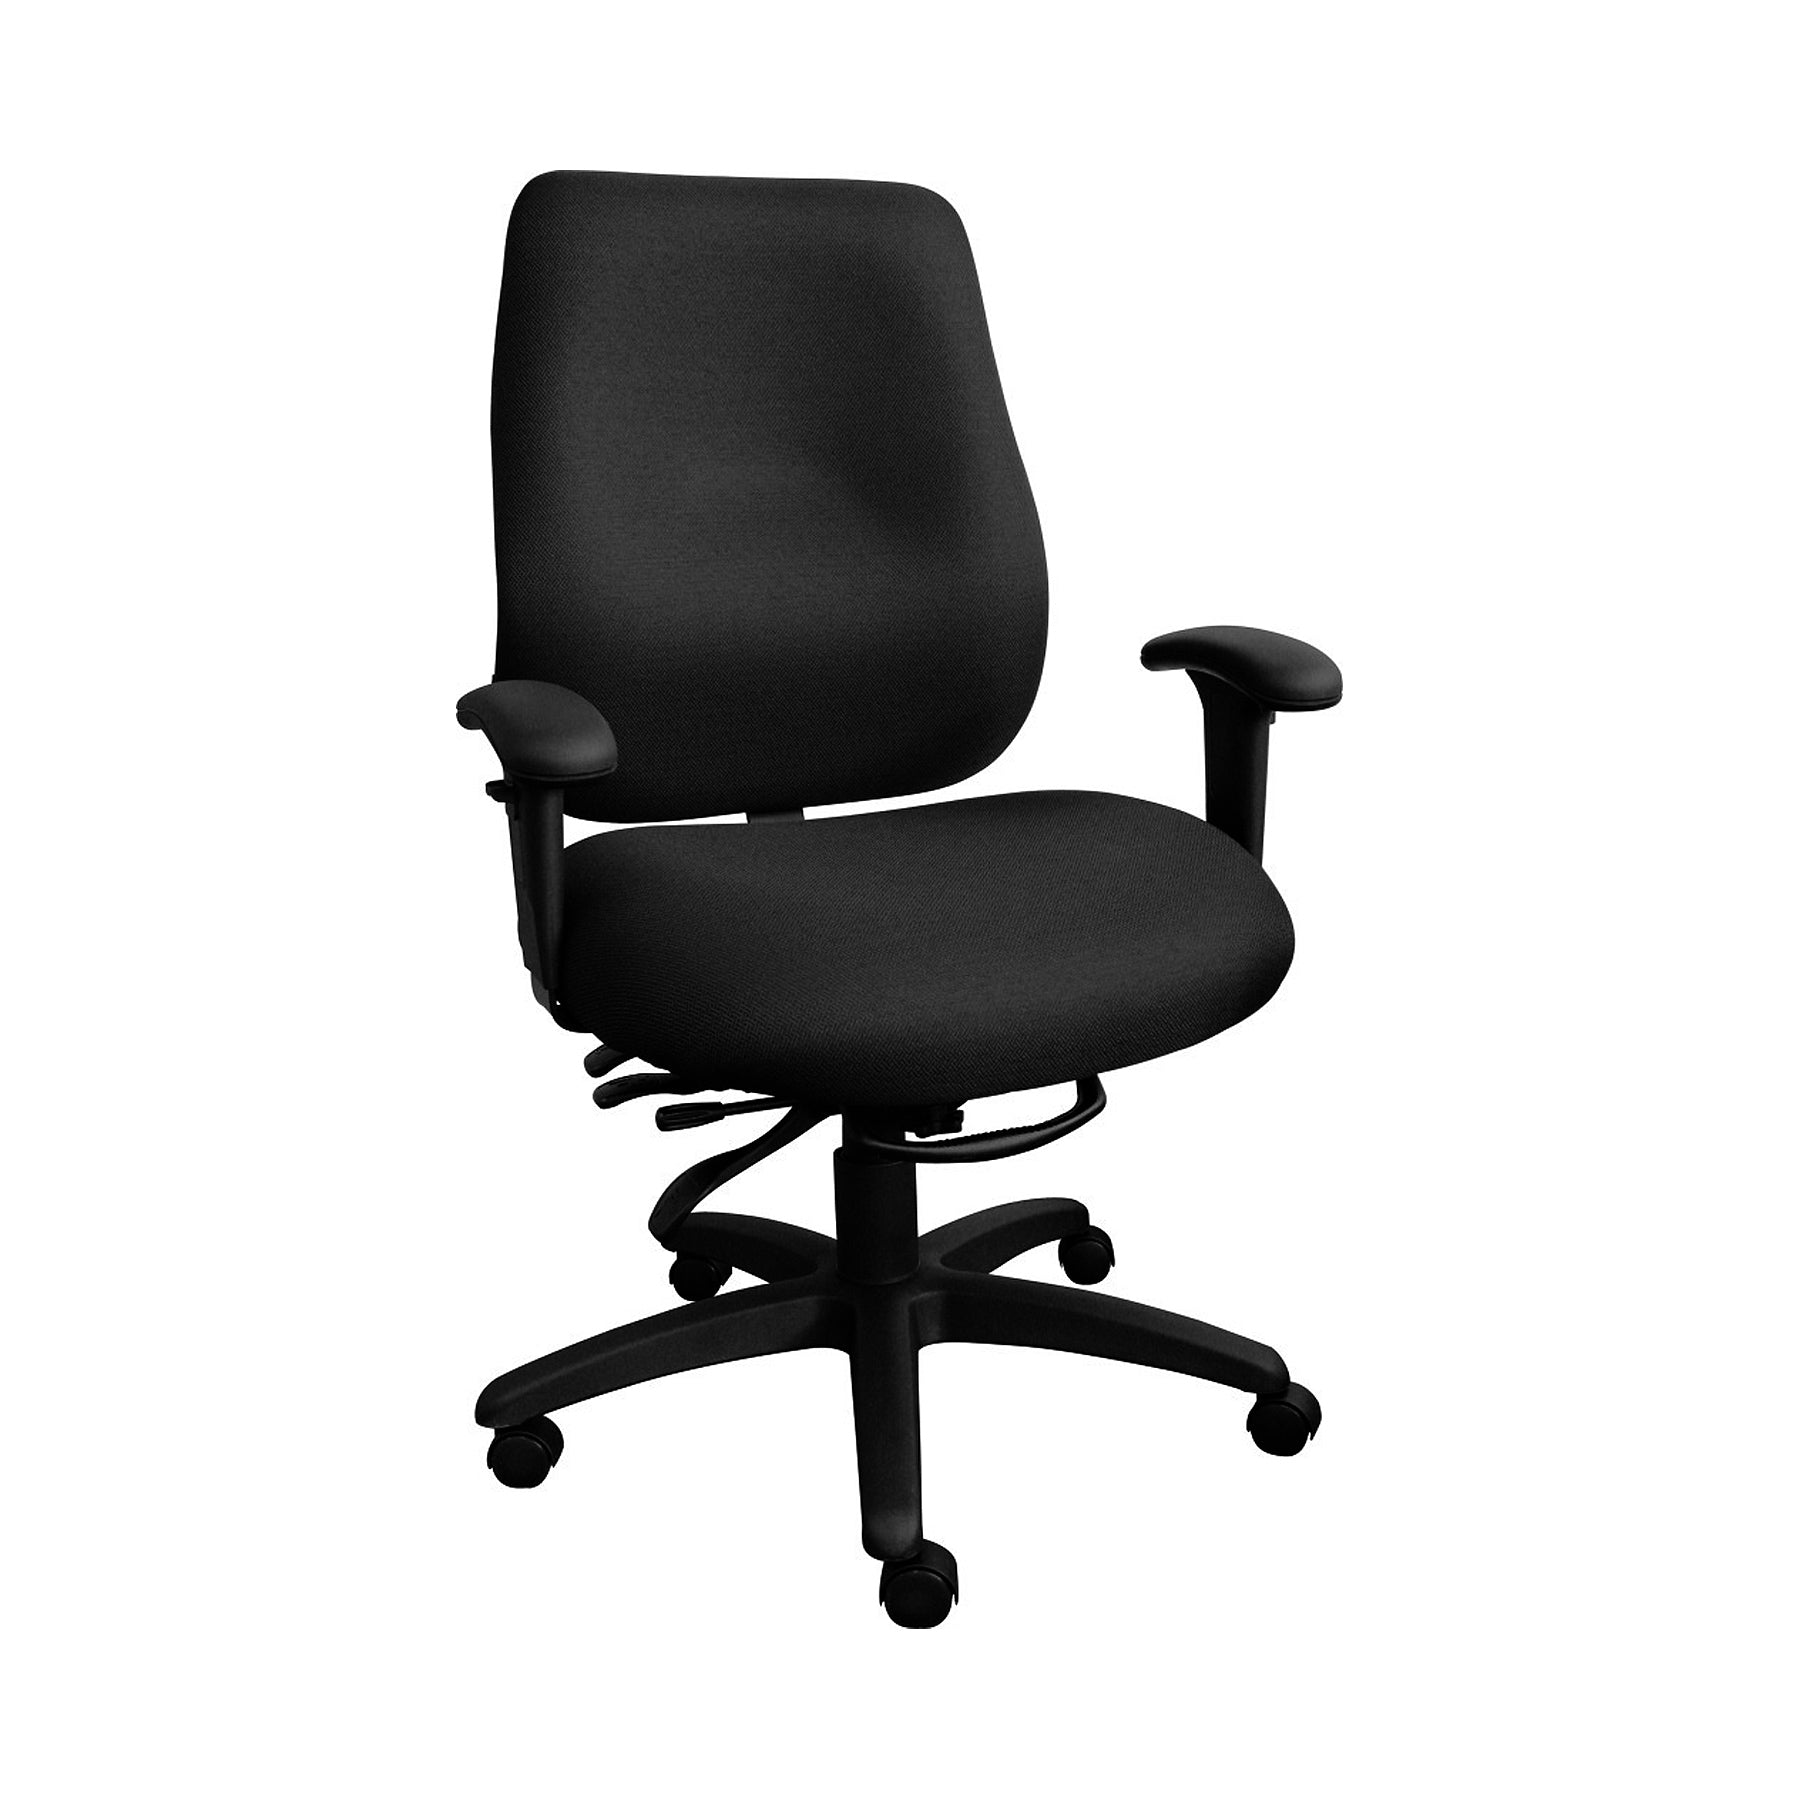 Chaise de bureau ergonomique pour personne de très petite taille Cierra  très petite